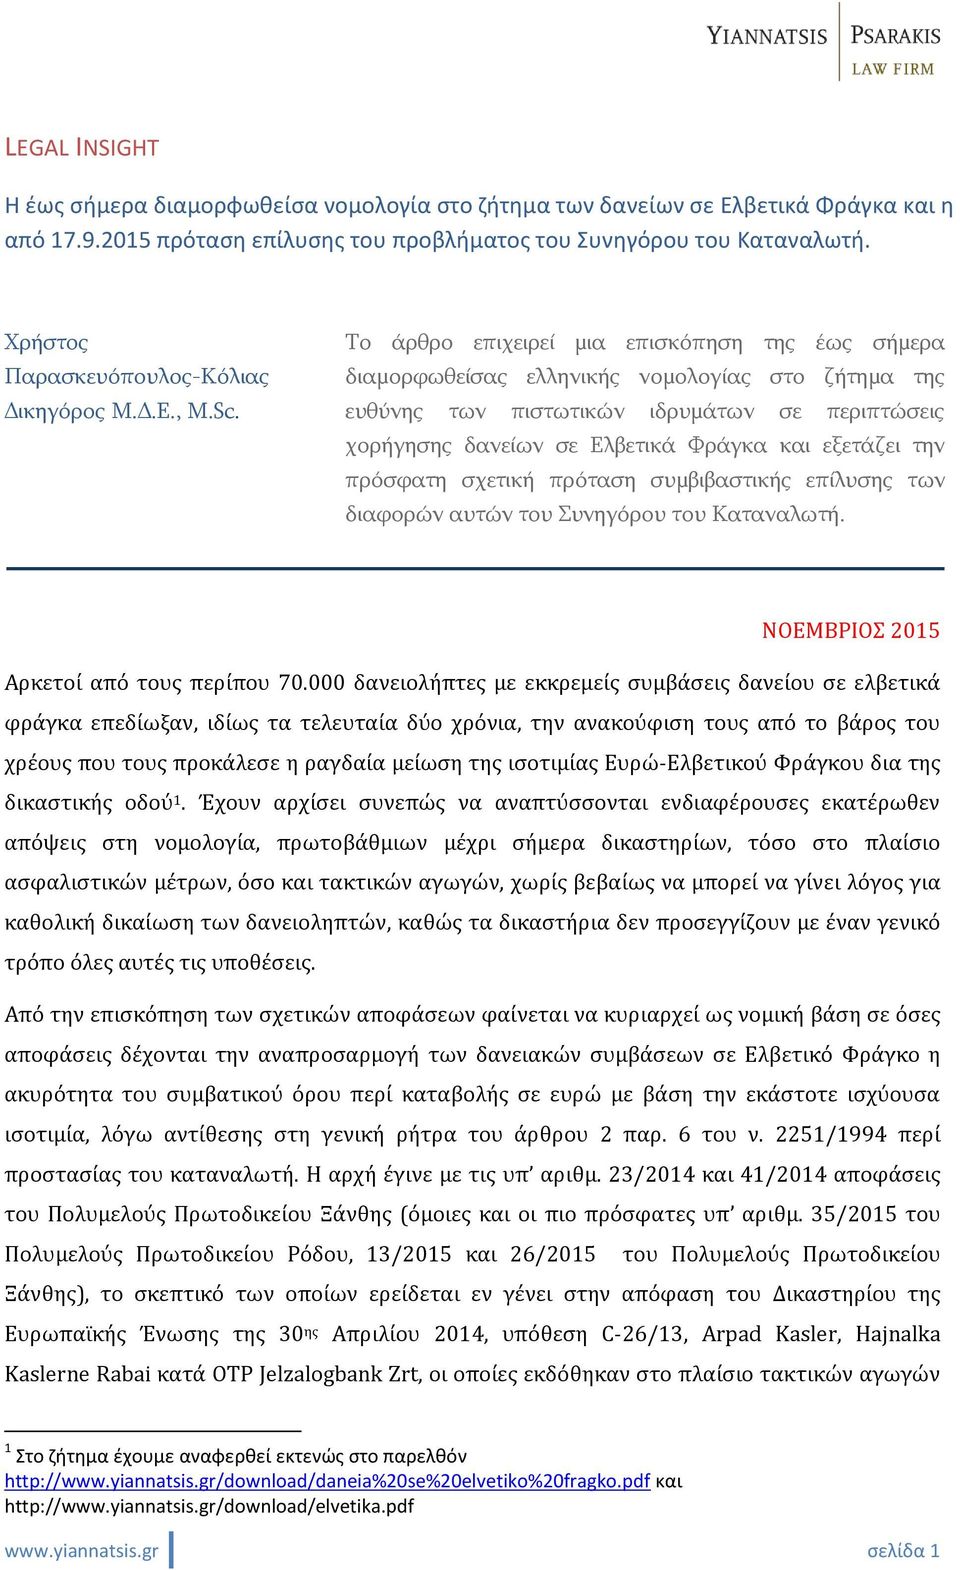 Το άρθρο επιχειρεί μια επισκόπηση της έως σήμερα διαμορφωθείσας ελληνικής νομολογίας στο ζήτημα της ευθύνης των πιστωτικών ιδρυμάτων σε περιπτώσεις χορήγησης δανείων σε Ελβετικά Φράγκα και εξετάζει